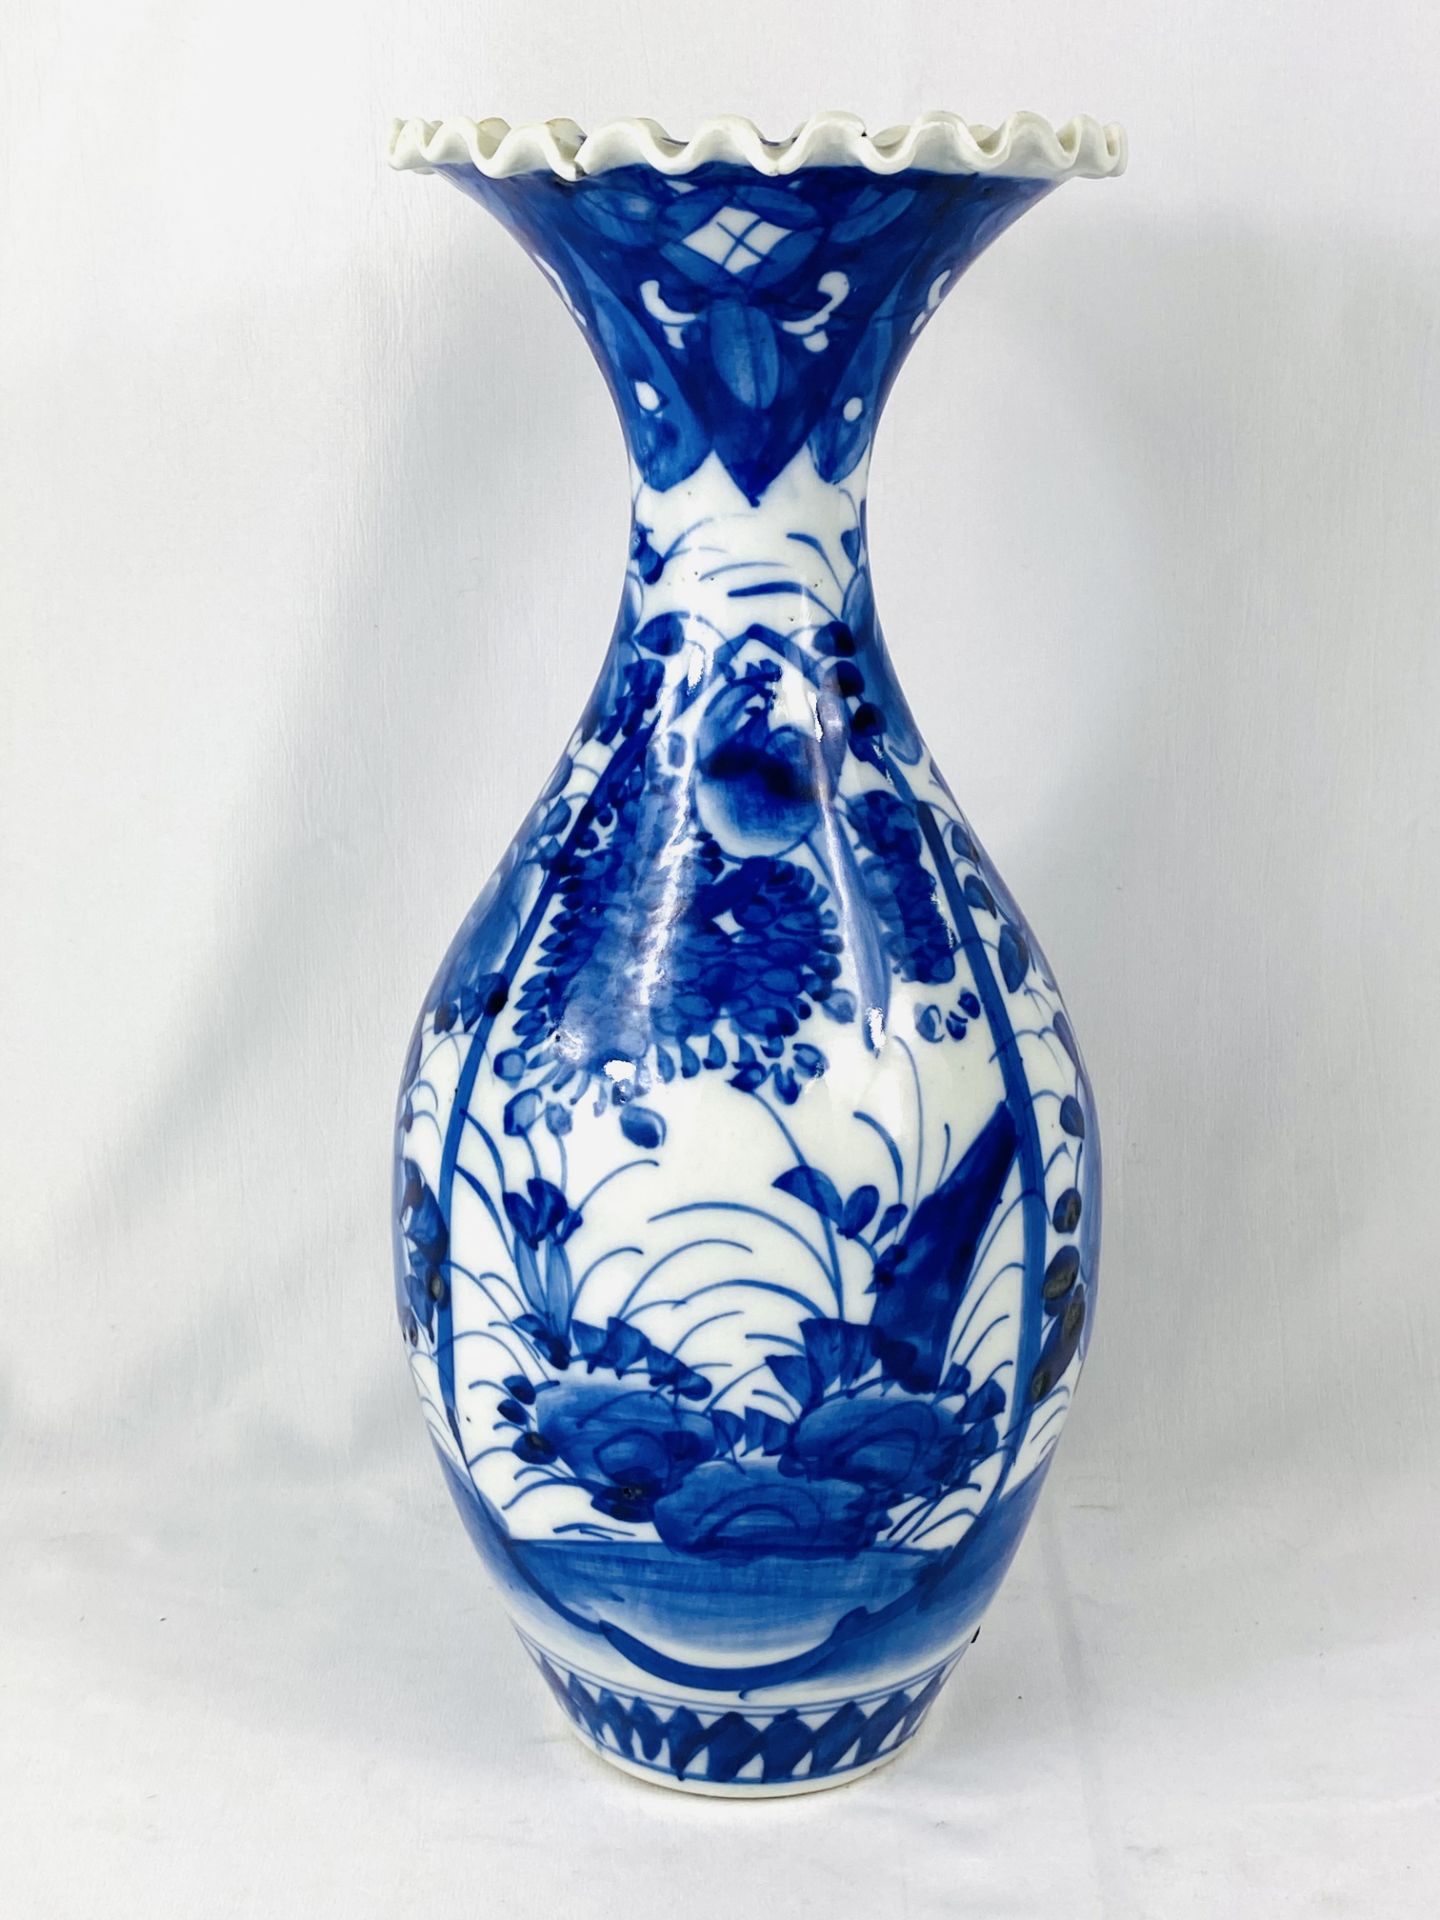 Blue and white ceramic vase